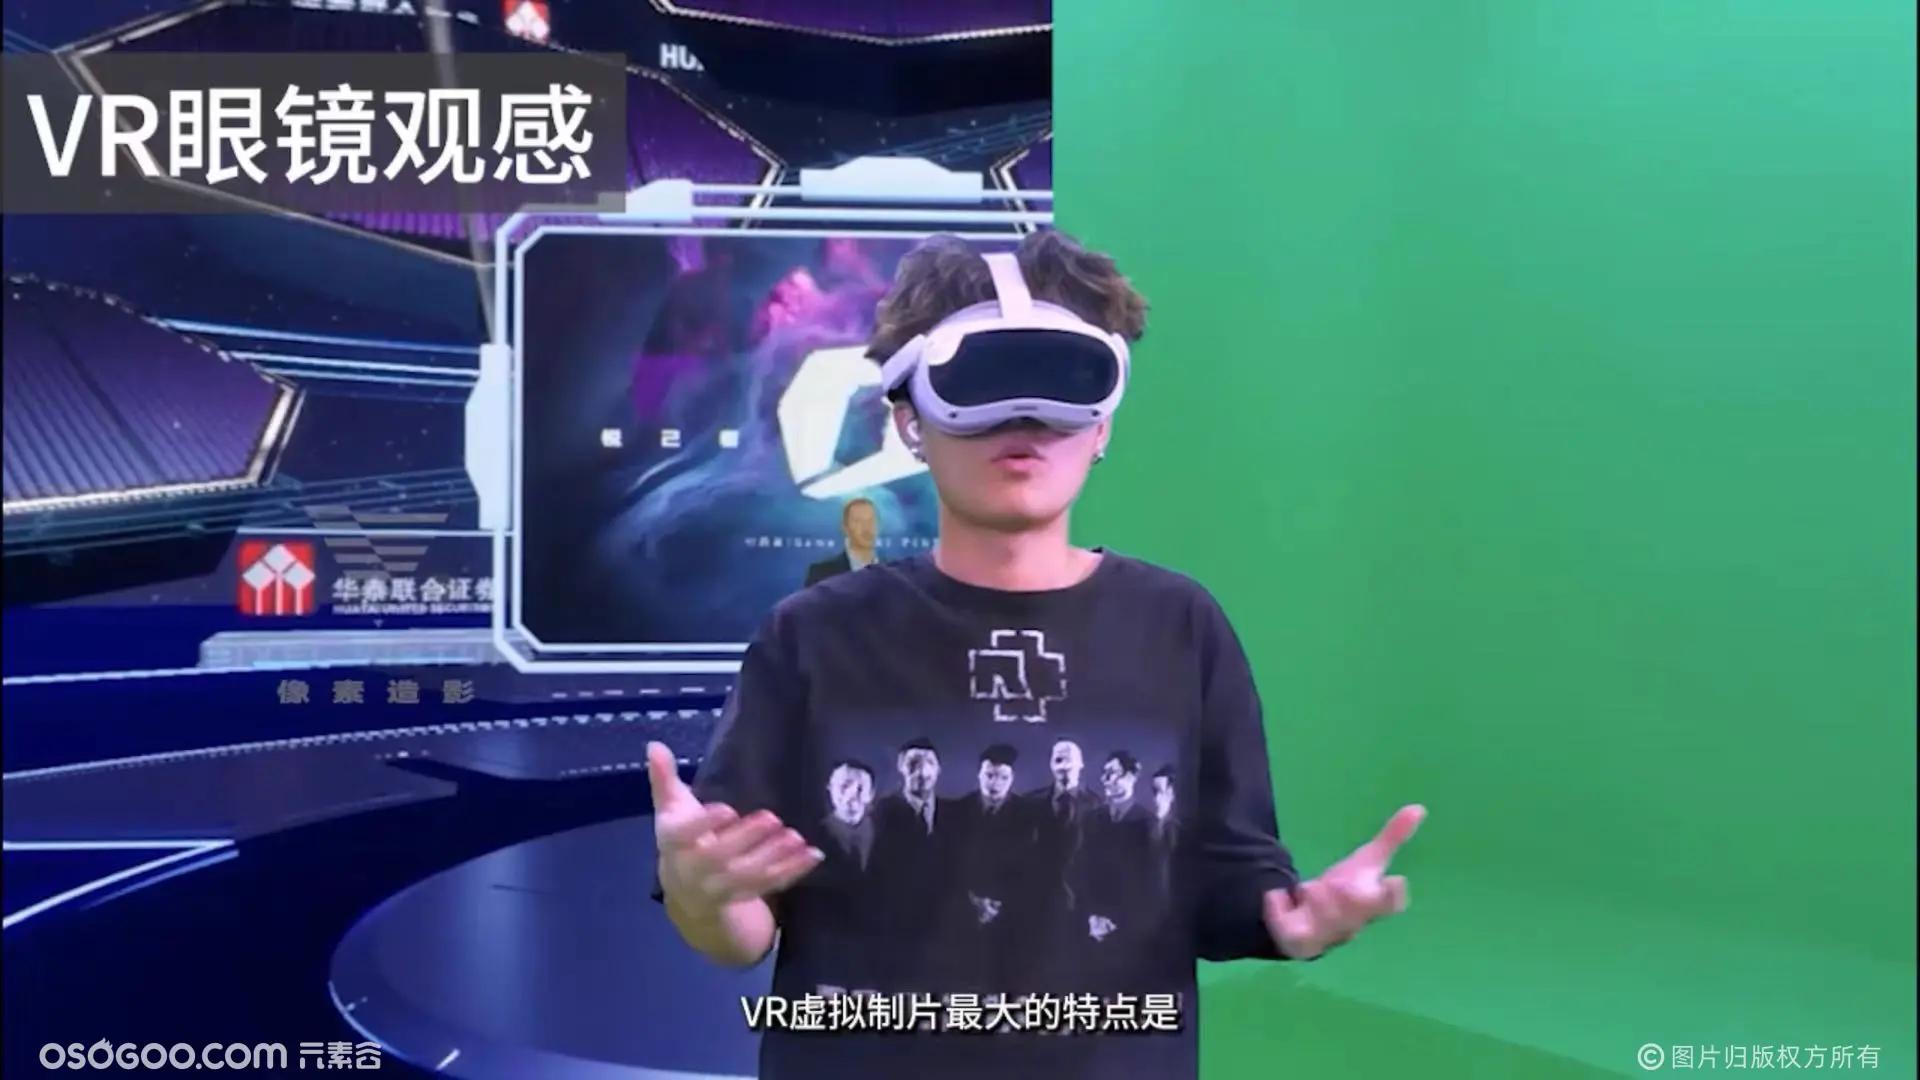 VR虚拟制片，720度全景观看，实时虚拟直播